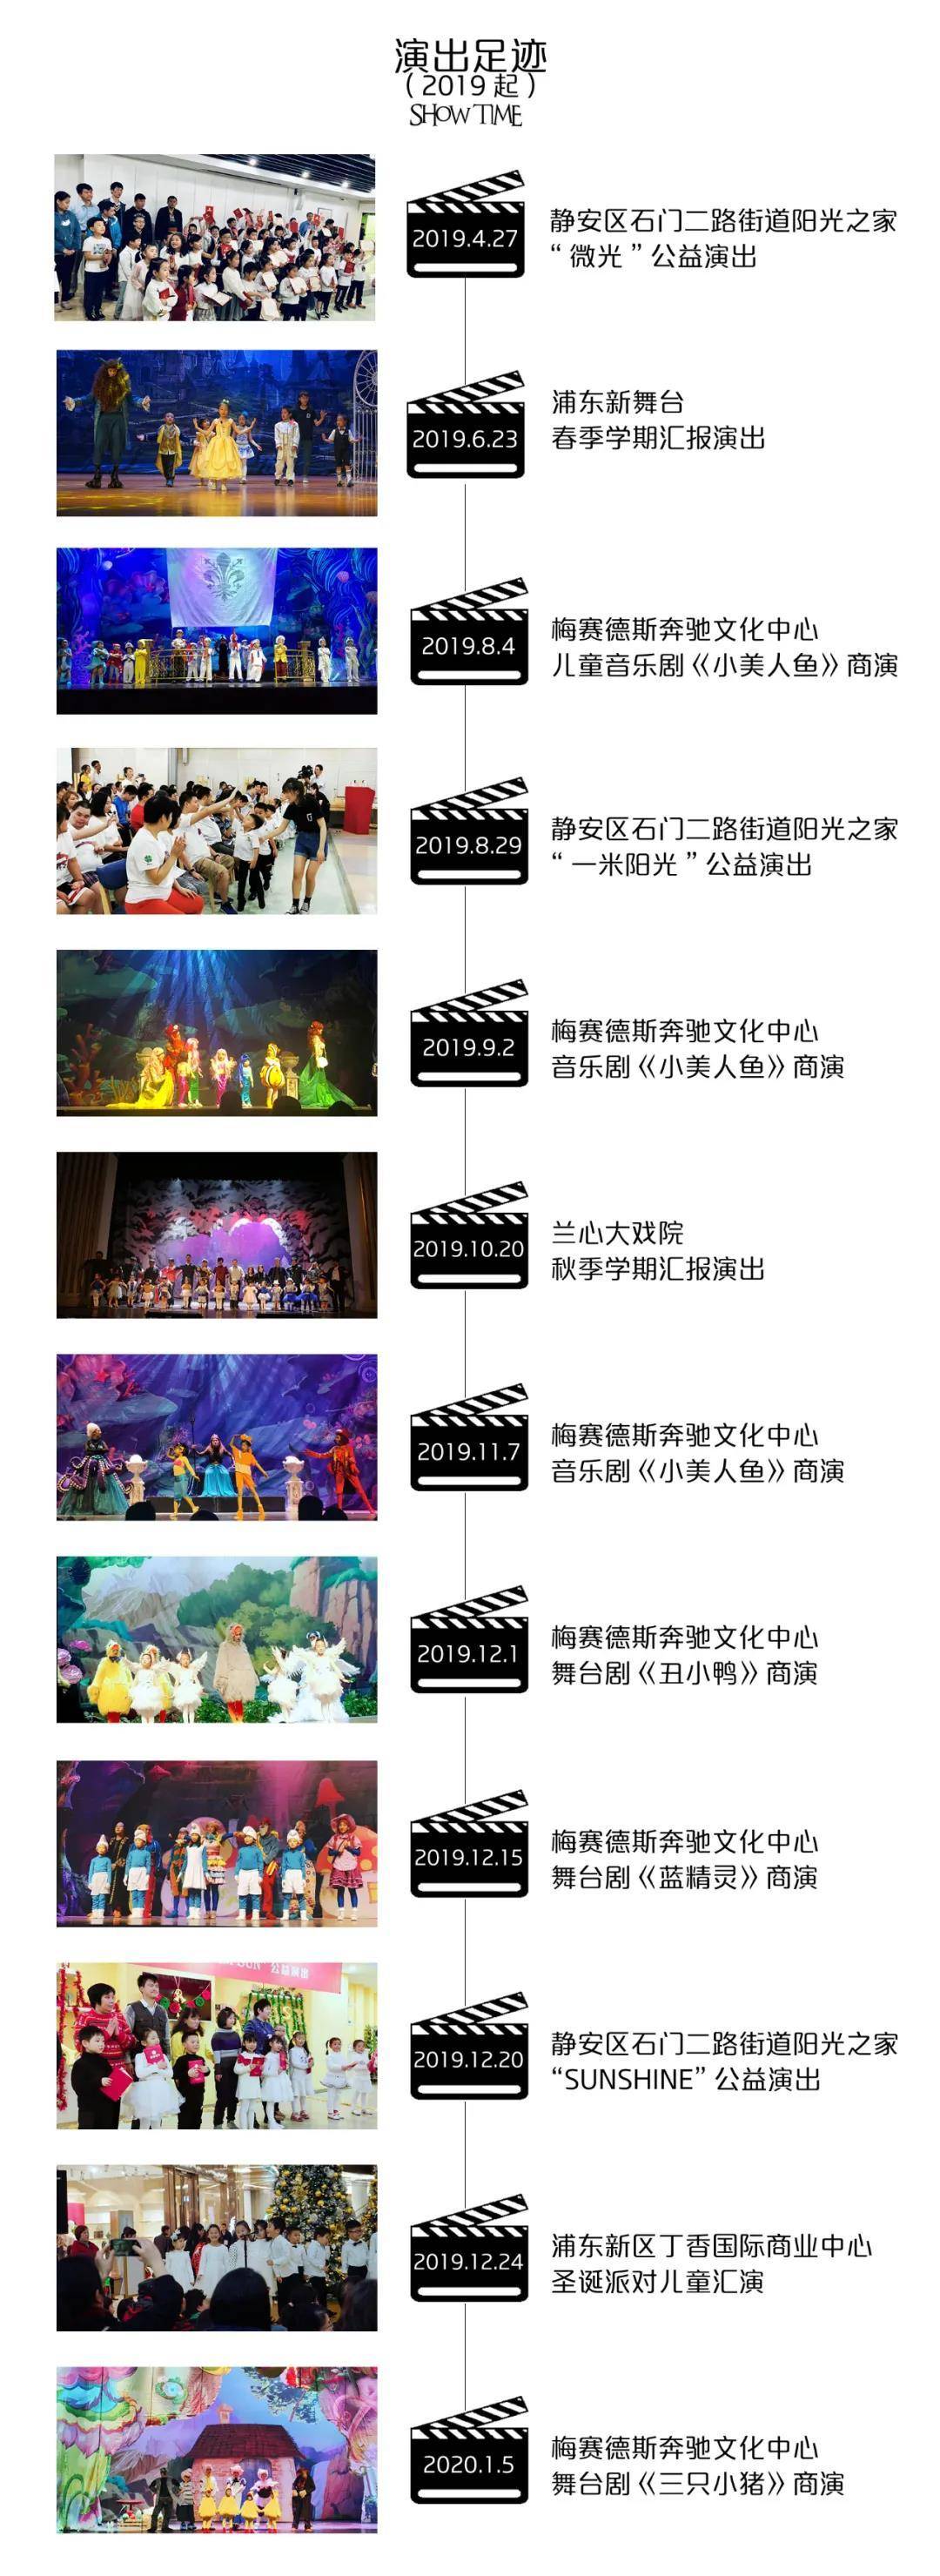 【上海】DramaKids剧场，剧团演员专业录制，好玩好学的情境课堂， 学习收获声乐、台词、形体、表演的基础能力知识，锻炼胆量，专业测评，解锁商演小演员面试资格